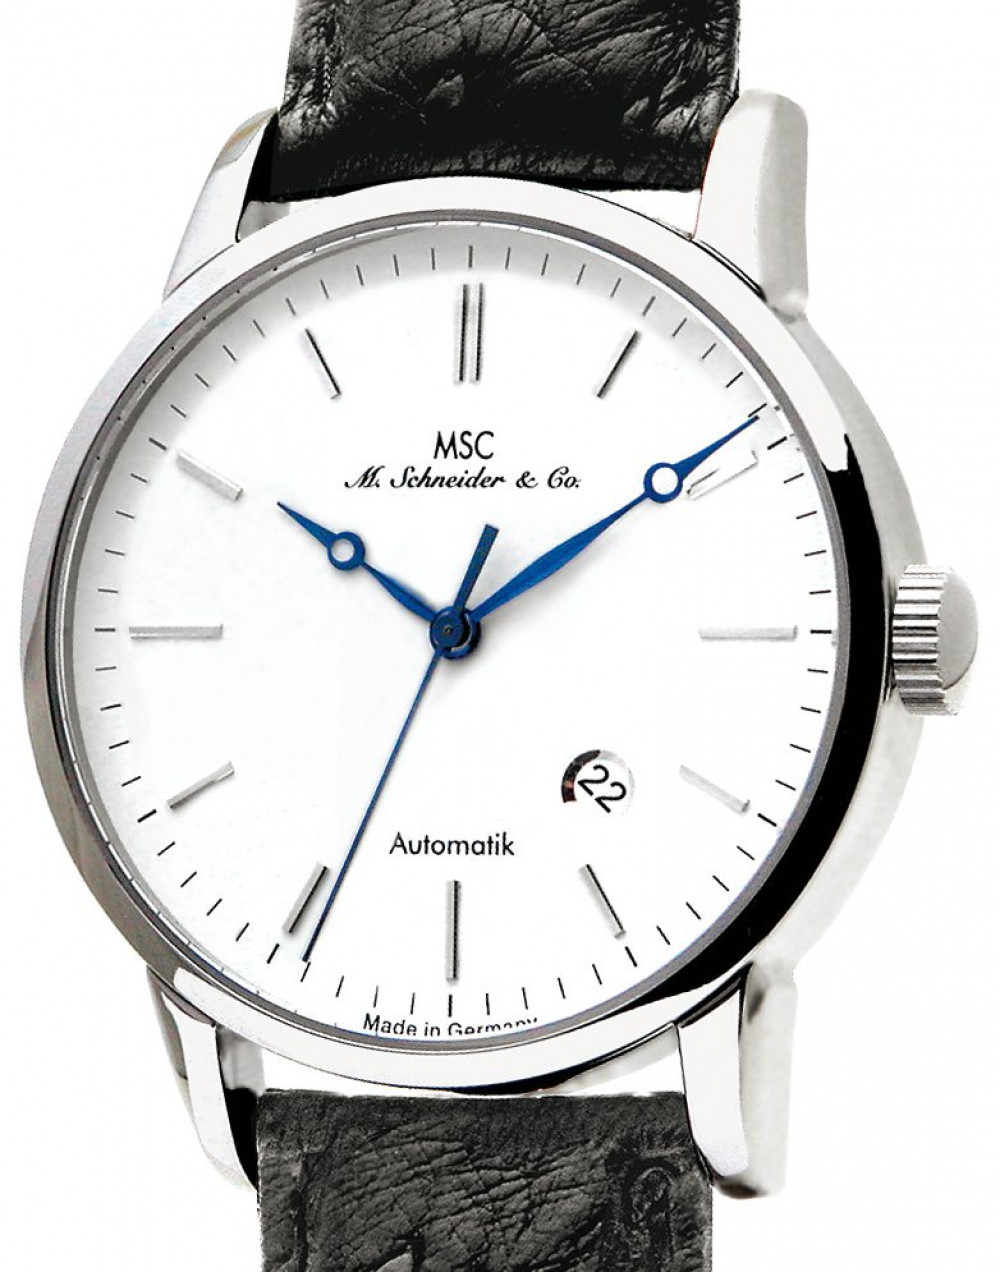 Zegarek firmy MSC M. Schneider & Co., model Avantgarde